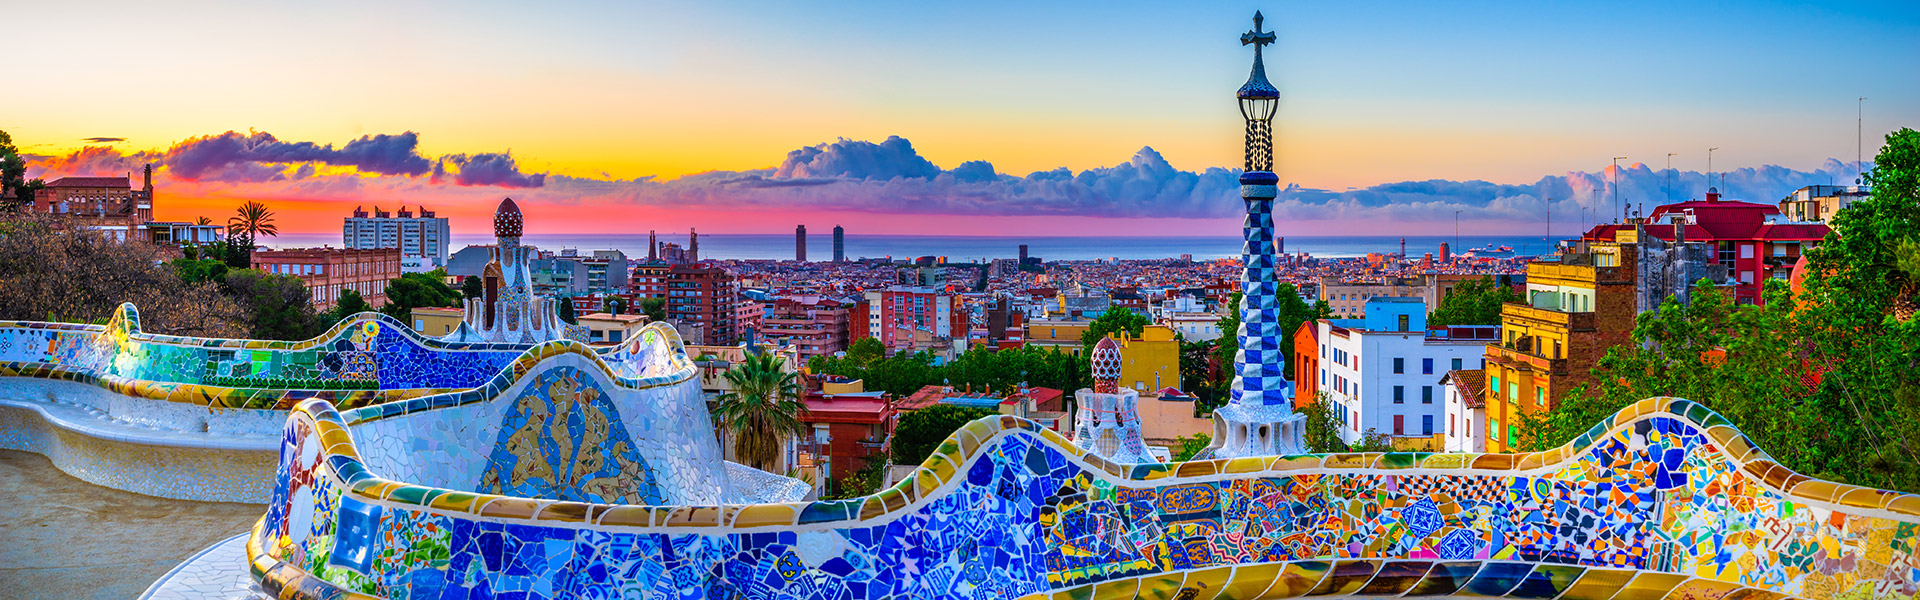 No te pierdas las mejores ofertas para un viaje de verano inolvidable a España
Barcelona desde $105